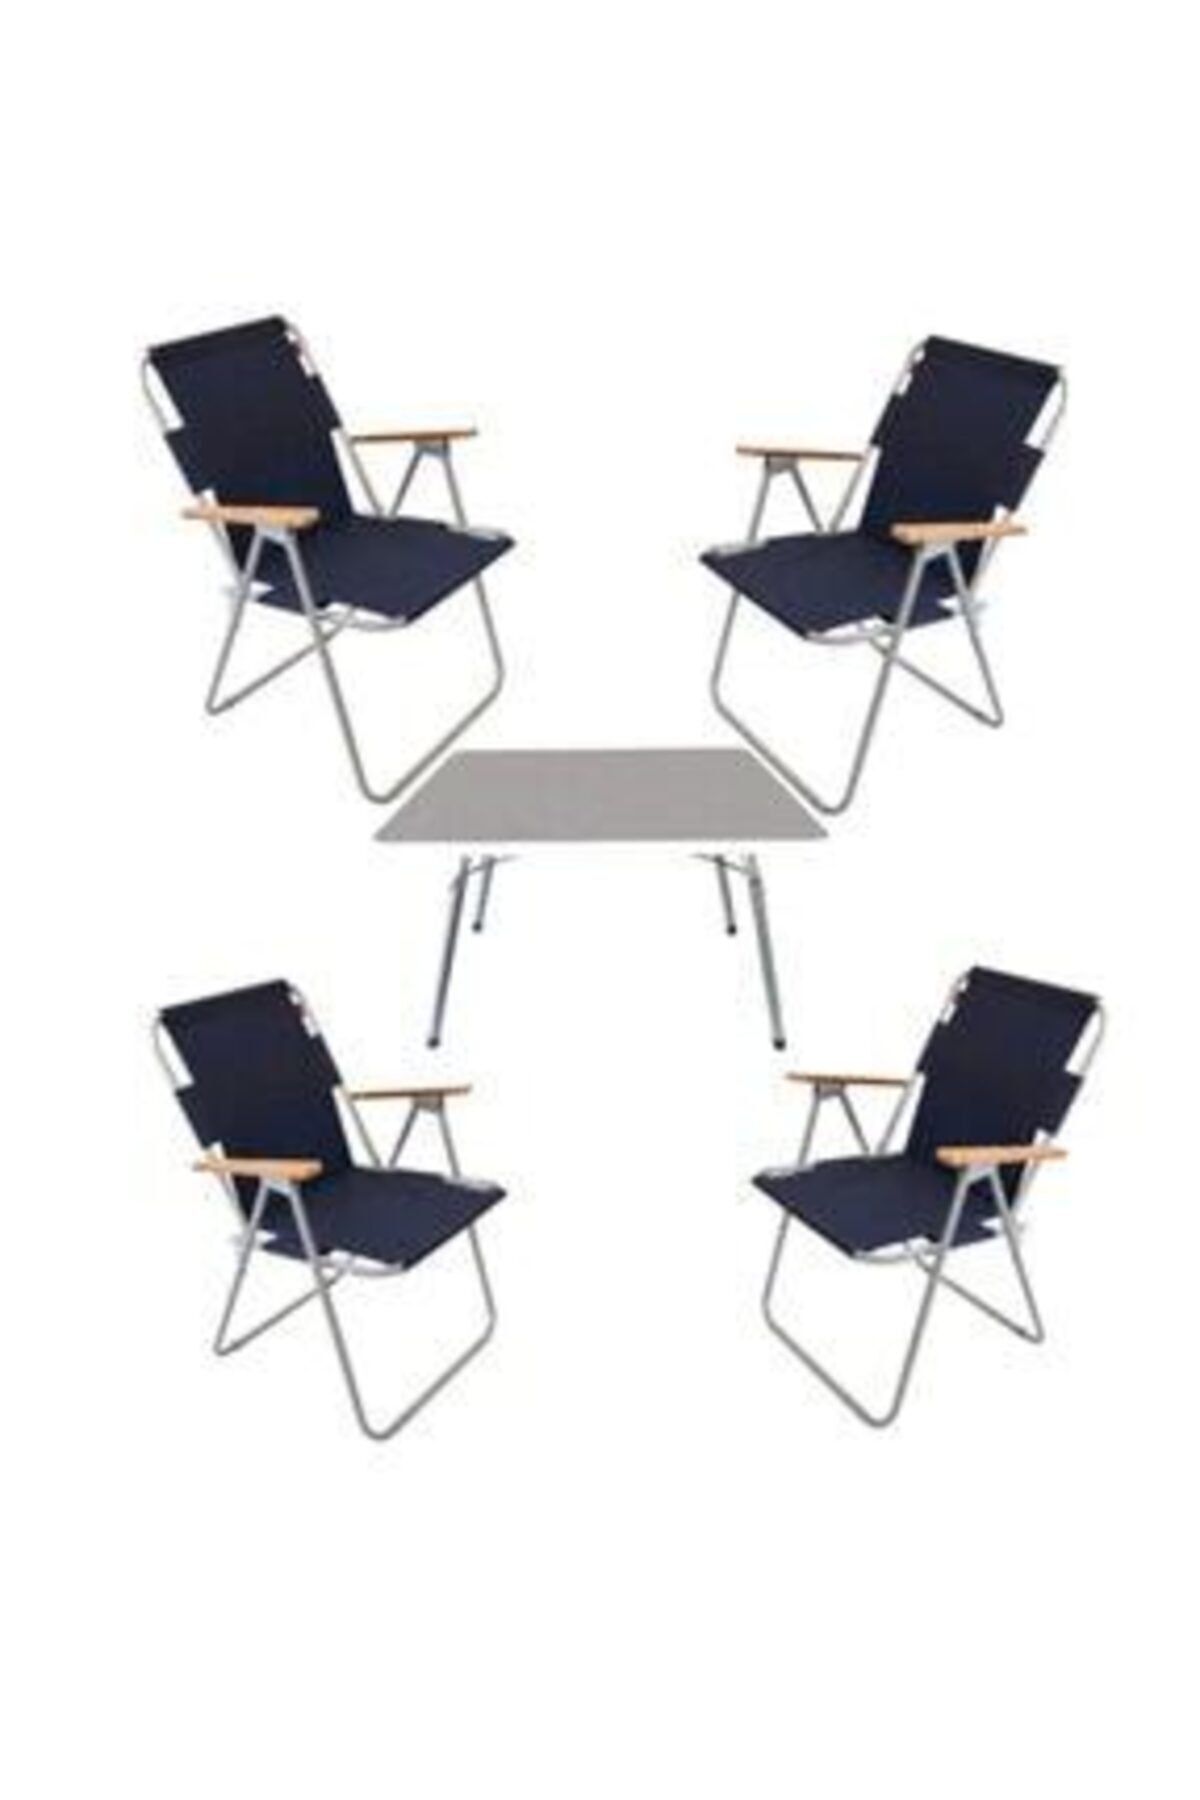 Marketonya 60x80 Beyaz Katlanır Masa + 4 Adet Lacivert Kamp Sandalyesi Katlanır Sandalye Piknik Plaj Sandalyesi